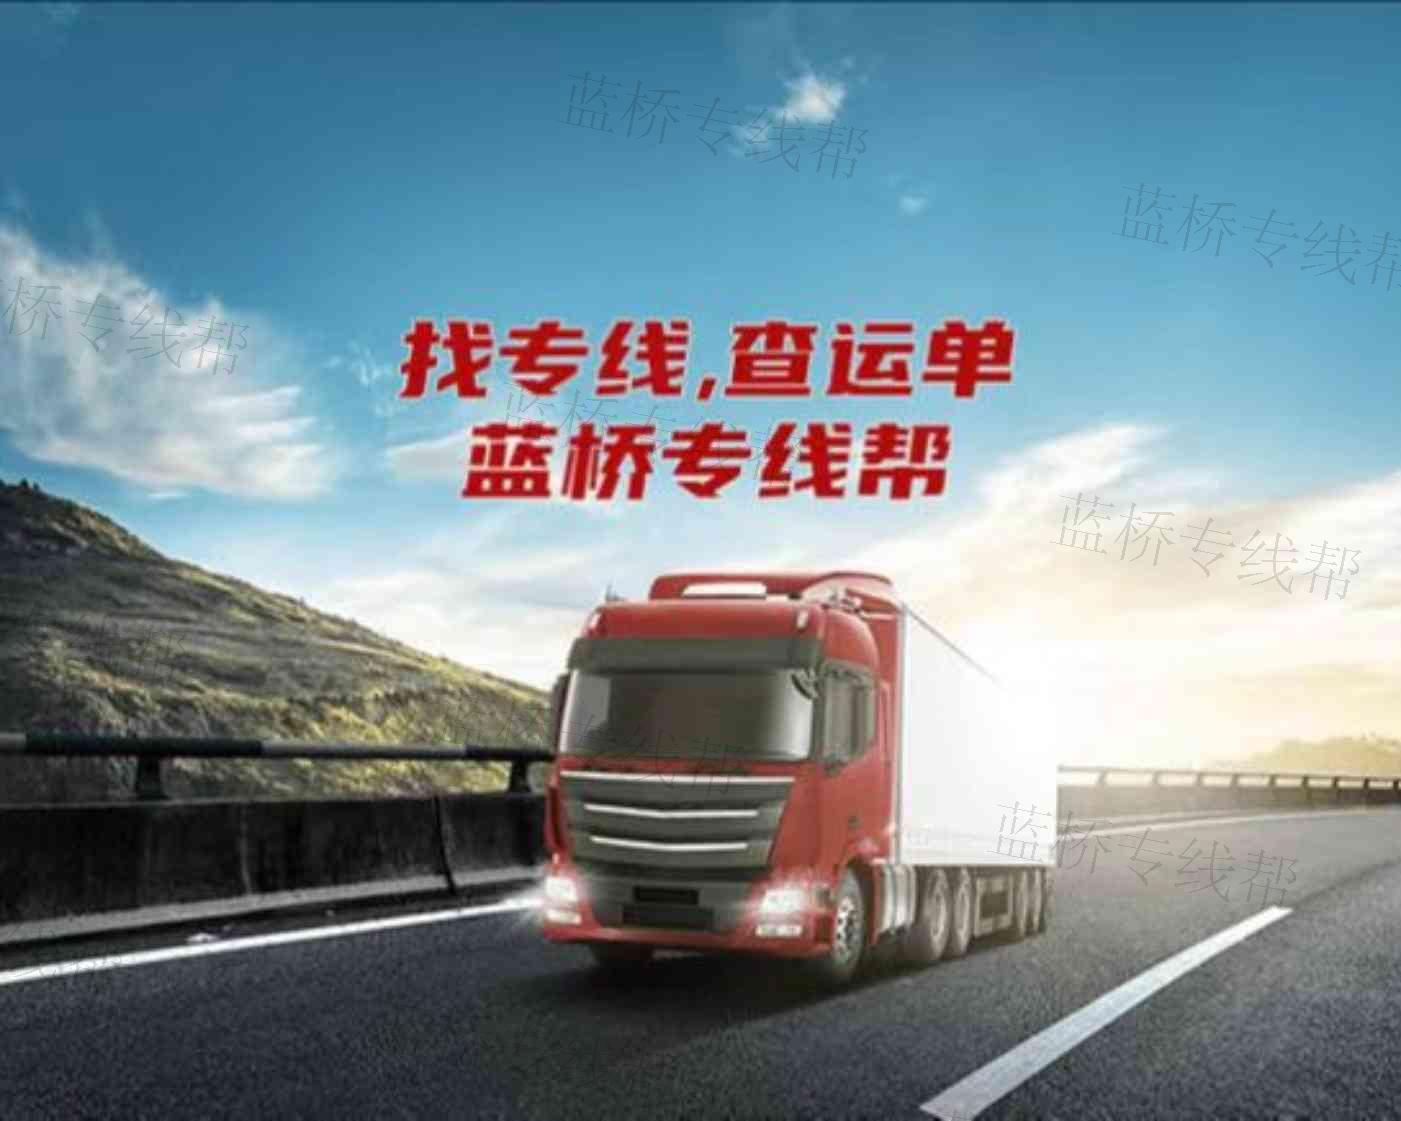 北京捷力众帮货运有限公司